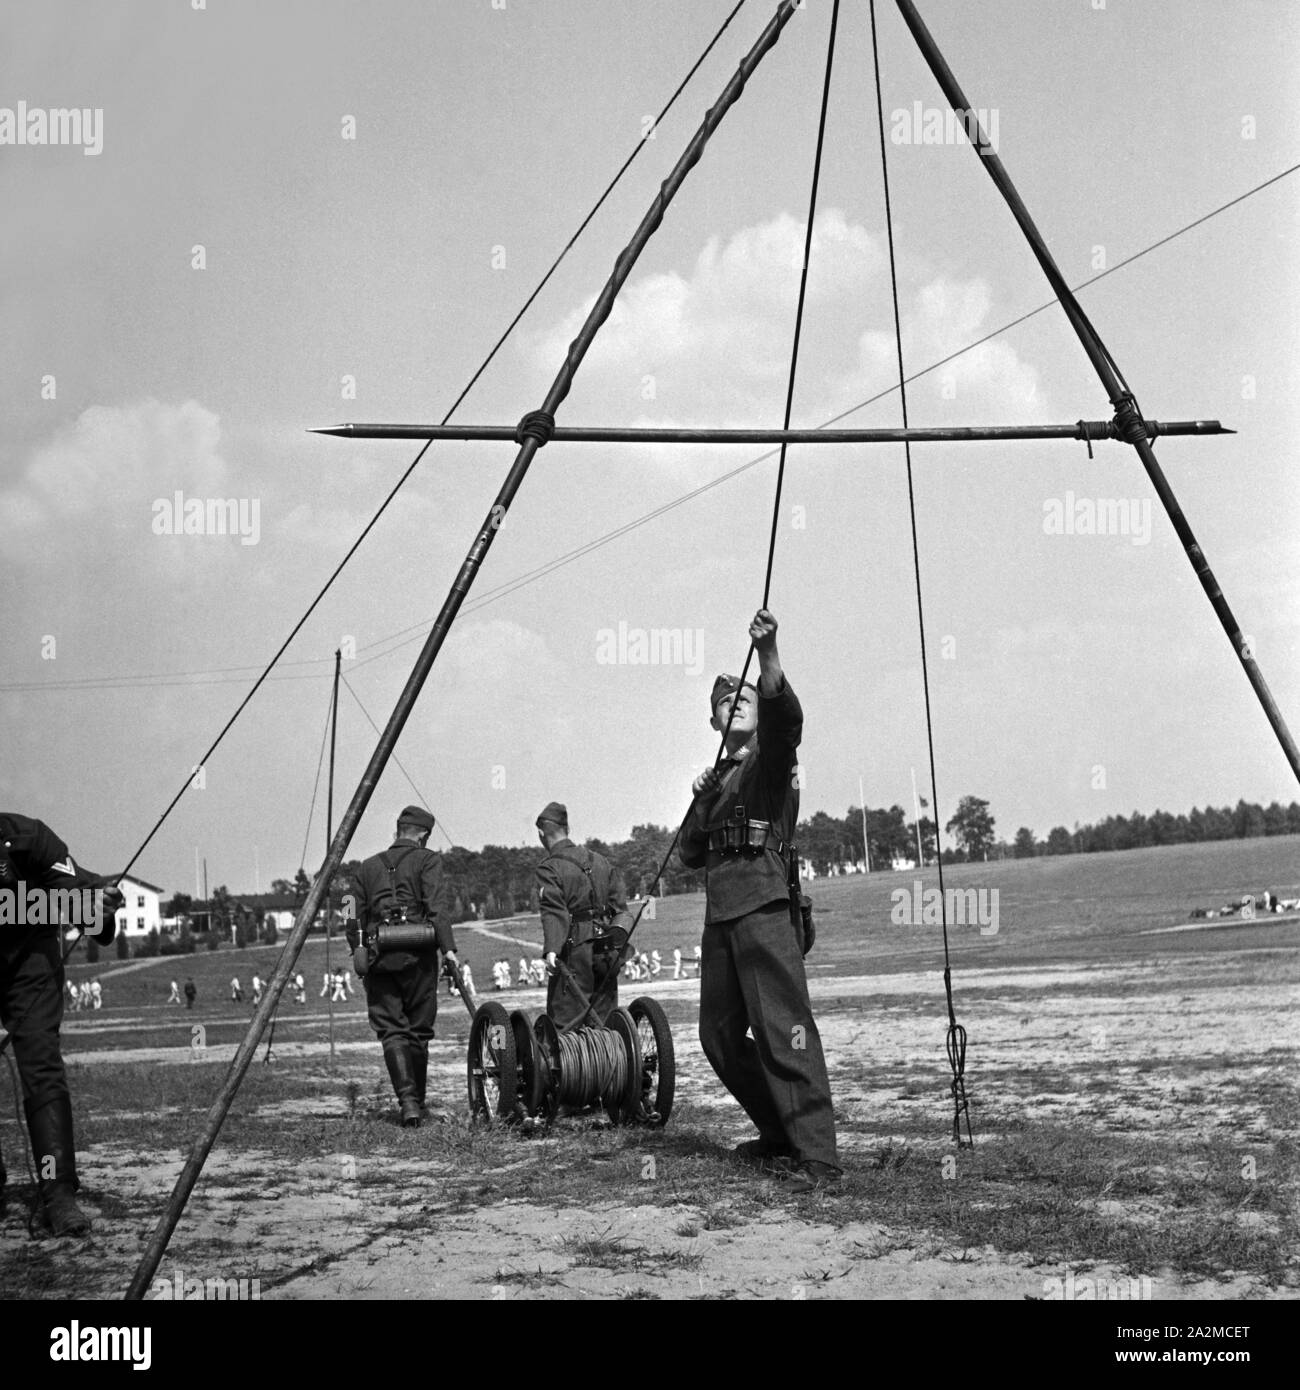 Original-Bildunterschrift: Übungsmäßig werden Fernsprechkabel gelegt, Deutschland 1940er Jahre. Filo telefonico è installato in un esercizio, Germania 1940s. Foto Stock